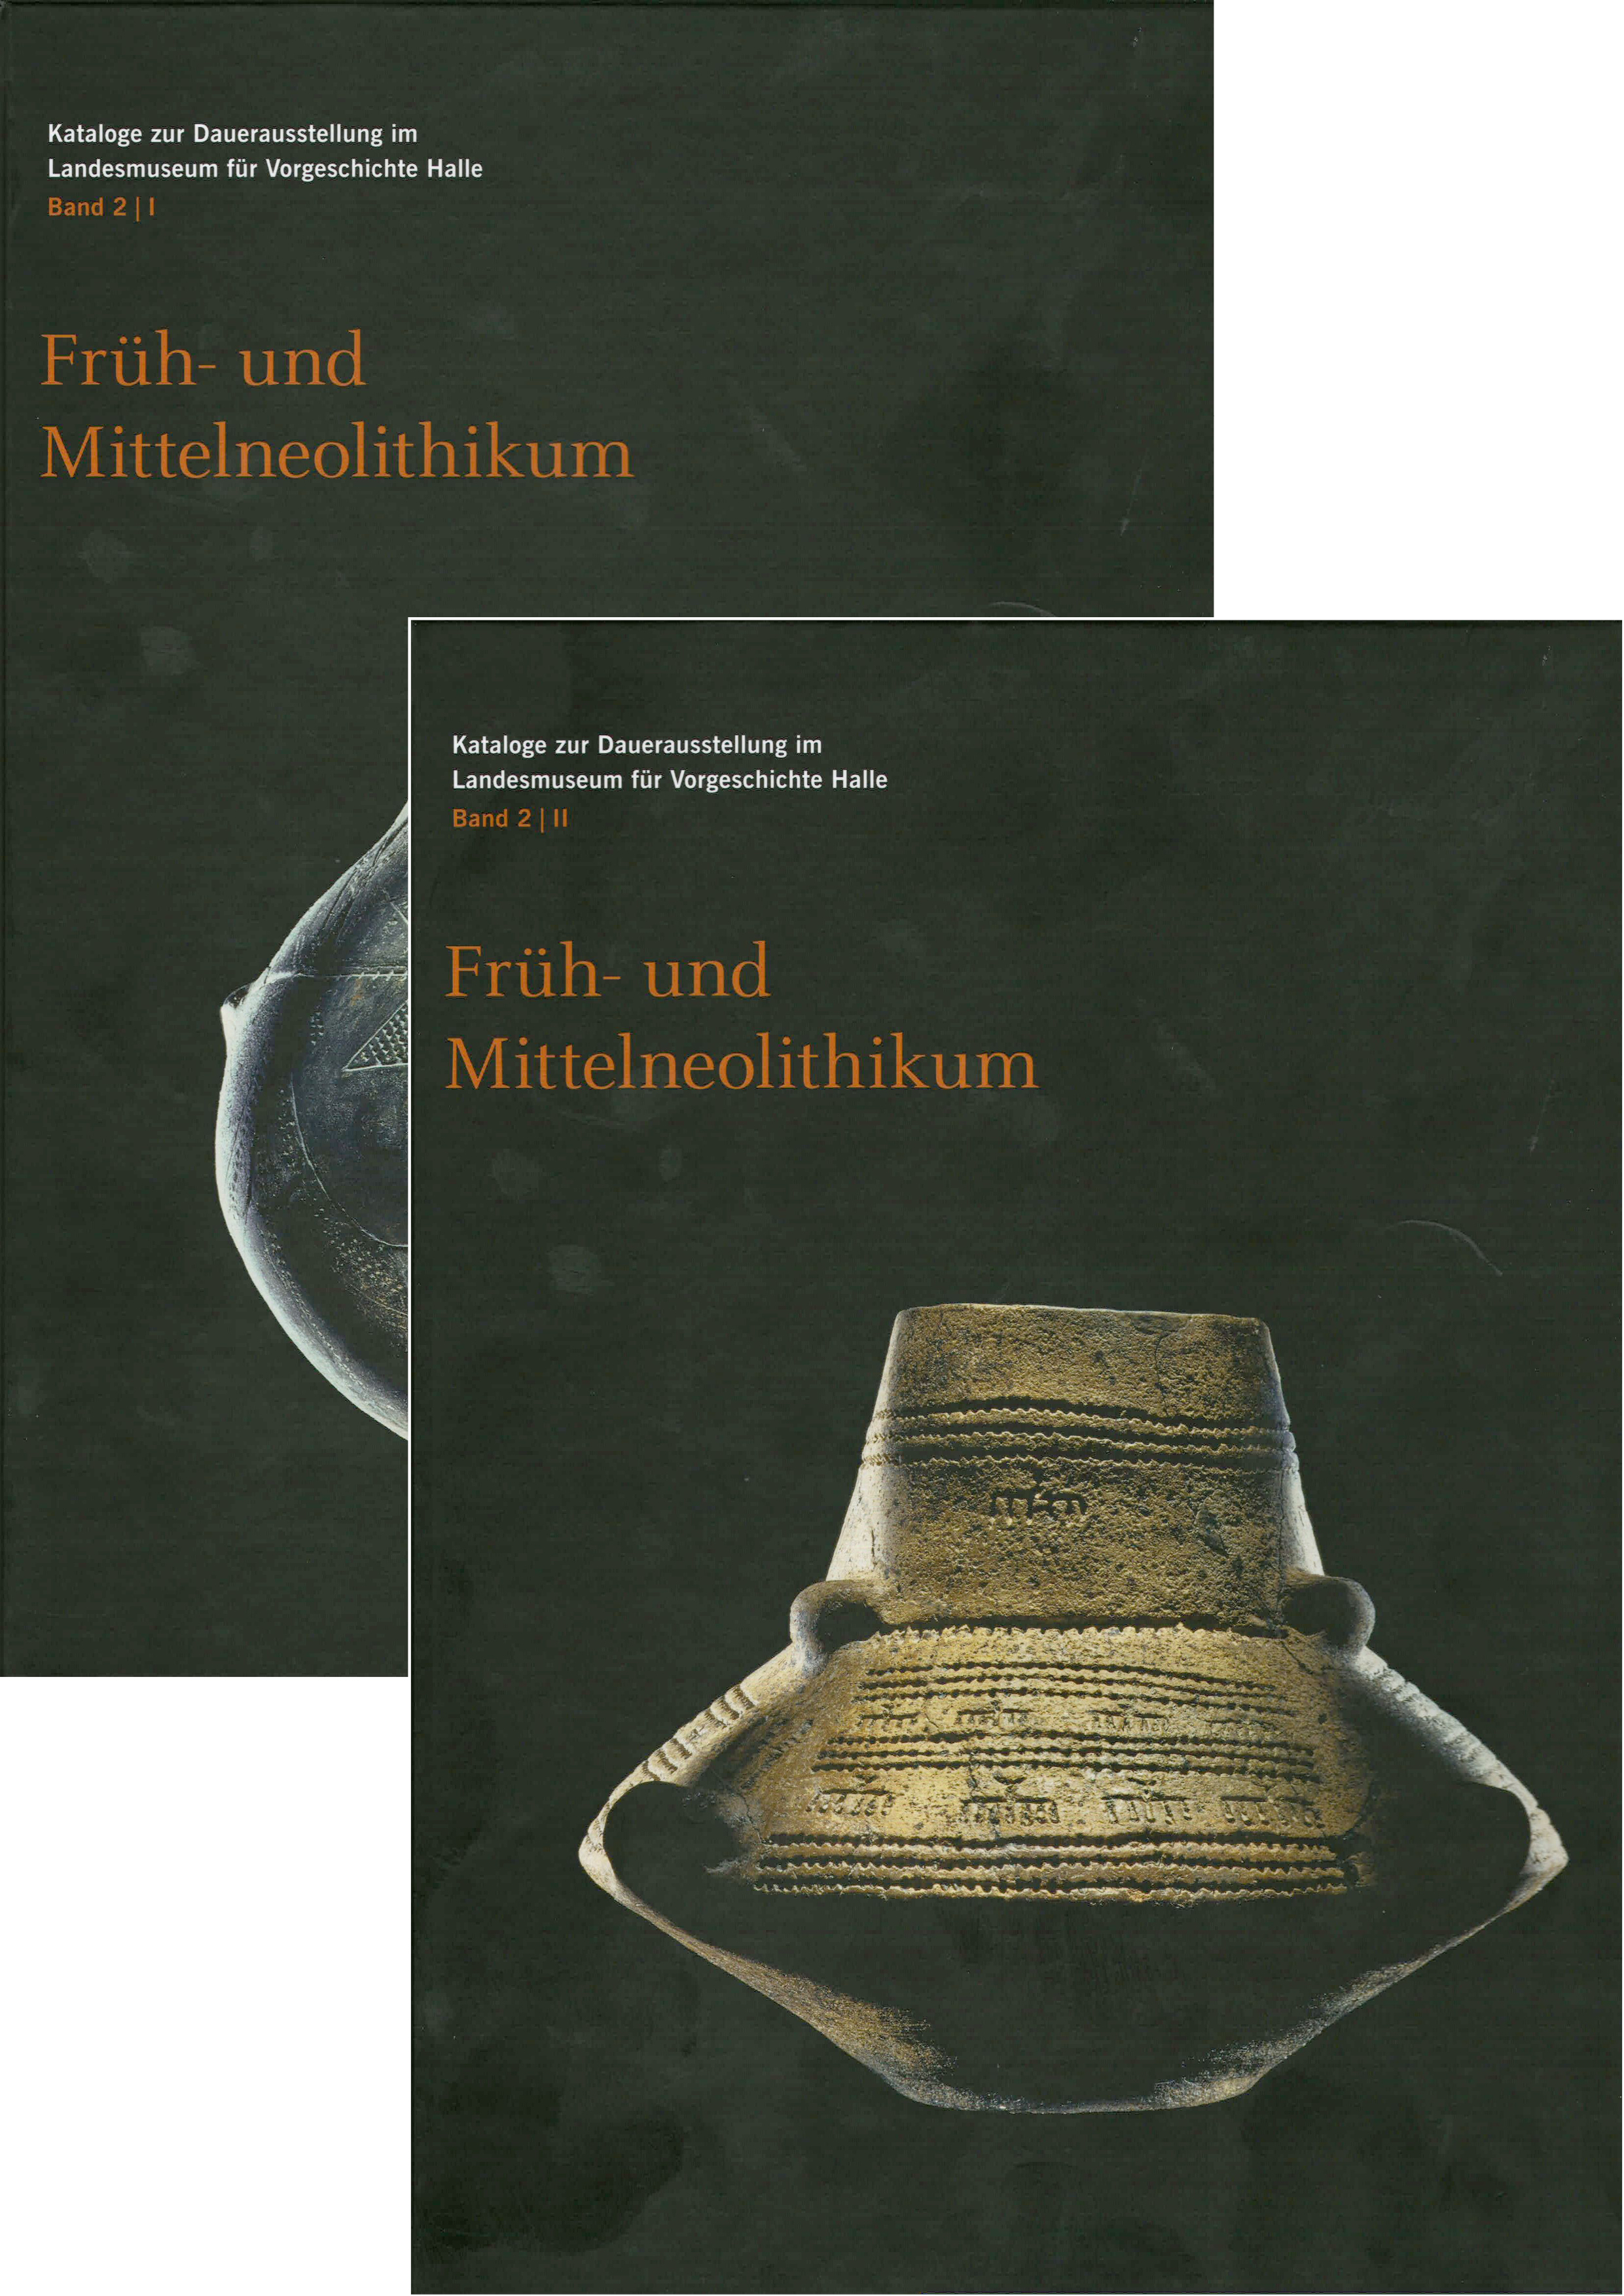 Früh- und Mittelneolithikum - Katalog zur Dauerausstellung im Landesmuseum für Vorgeschichte Halle Band 2 - Hrsg. Harald Meller